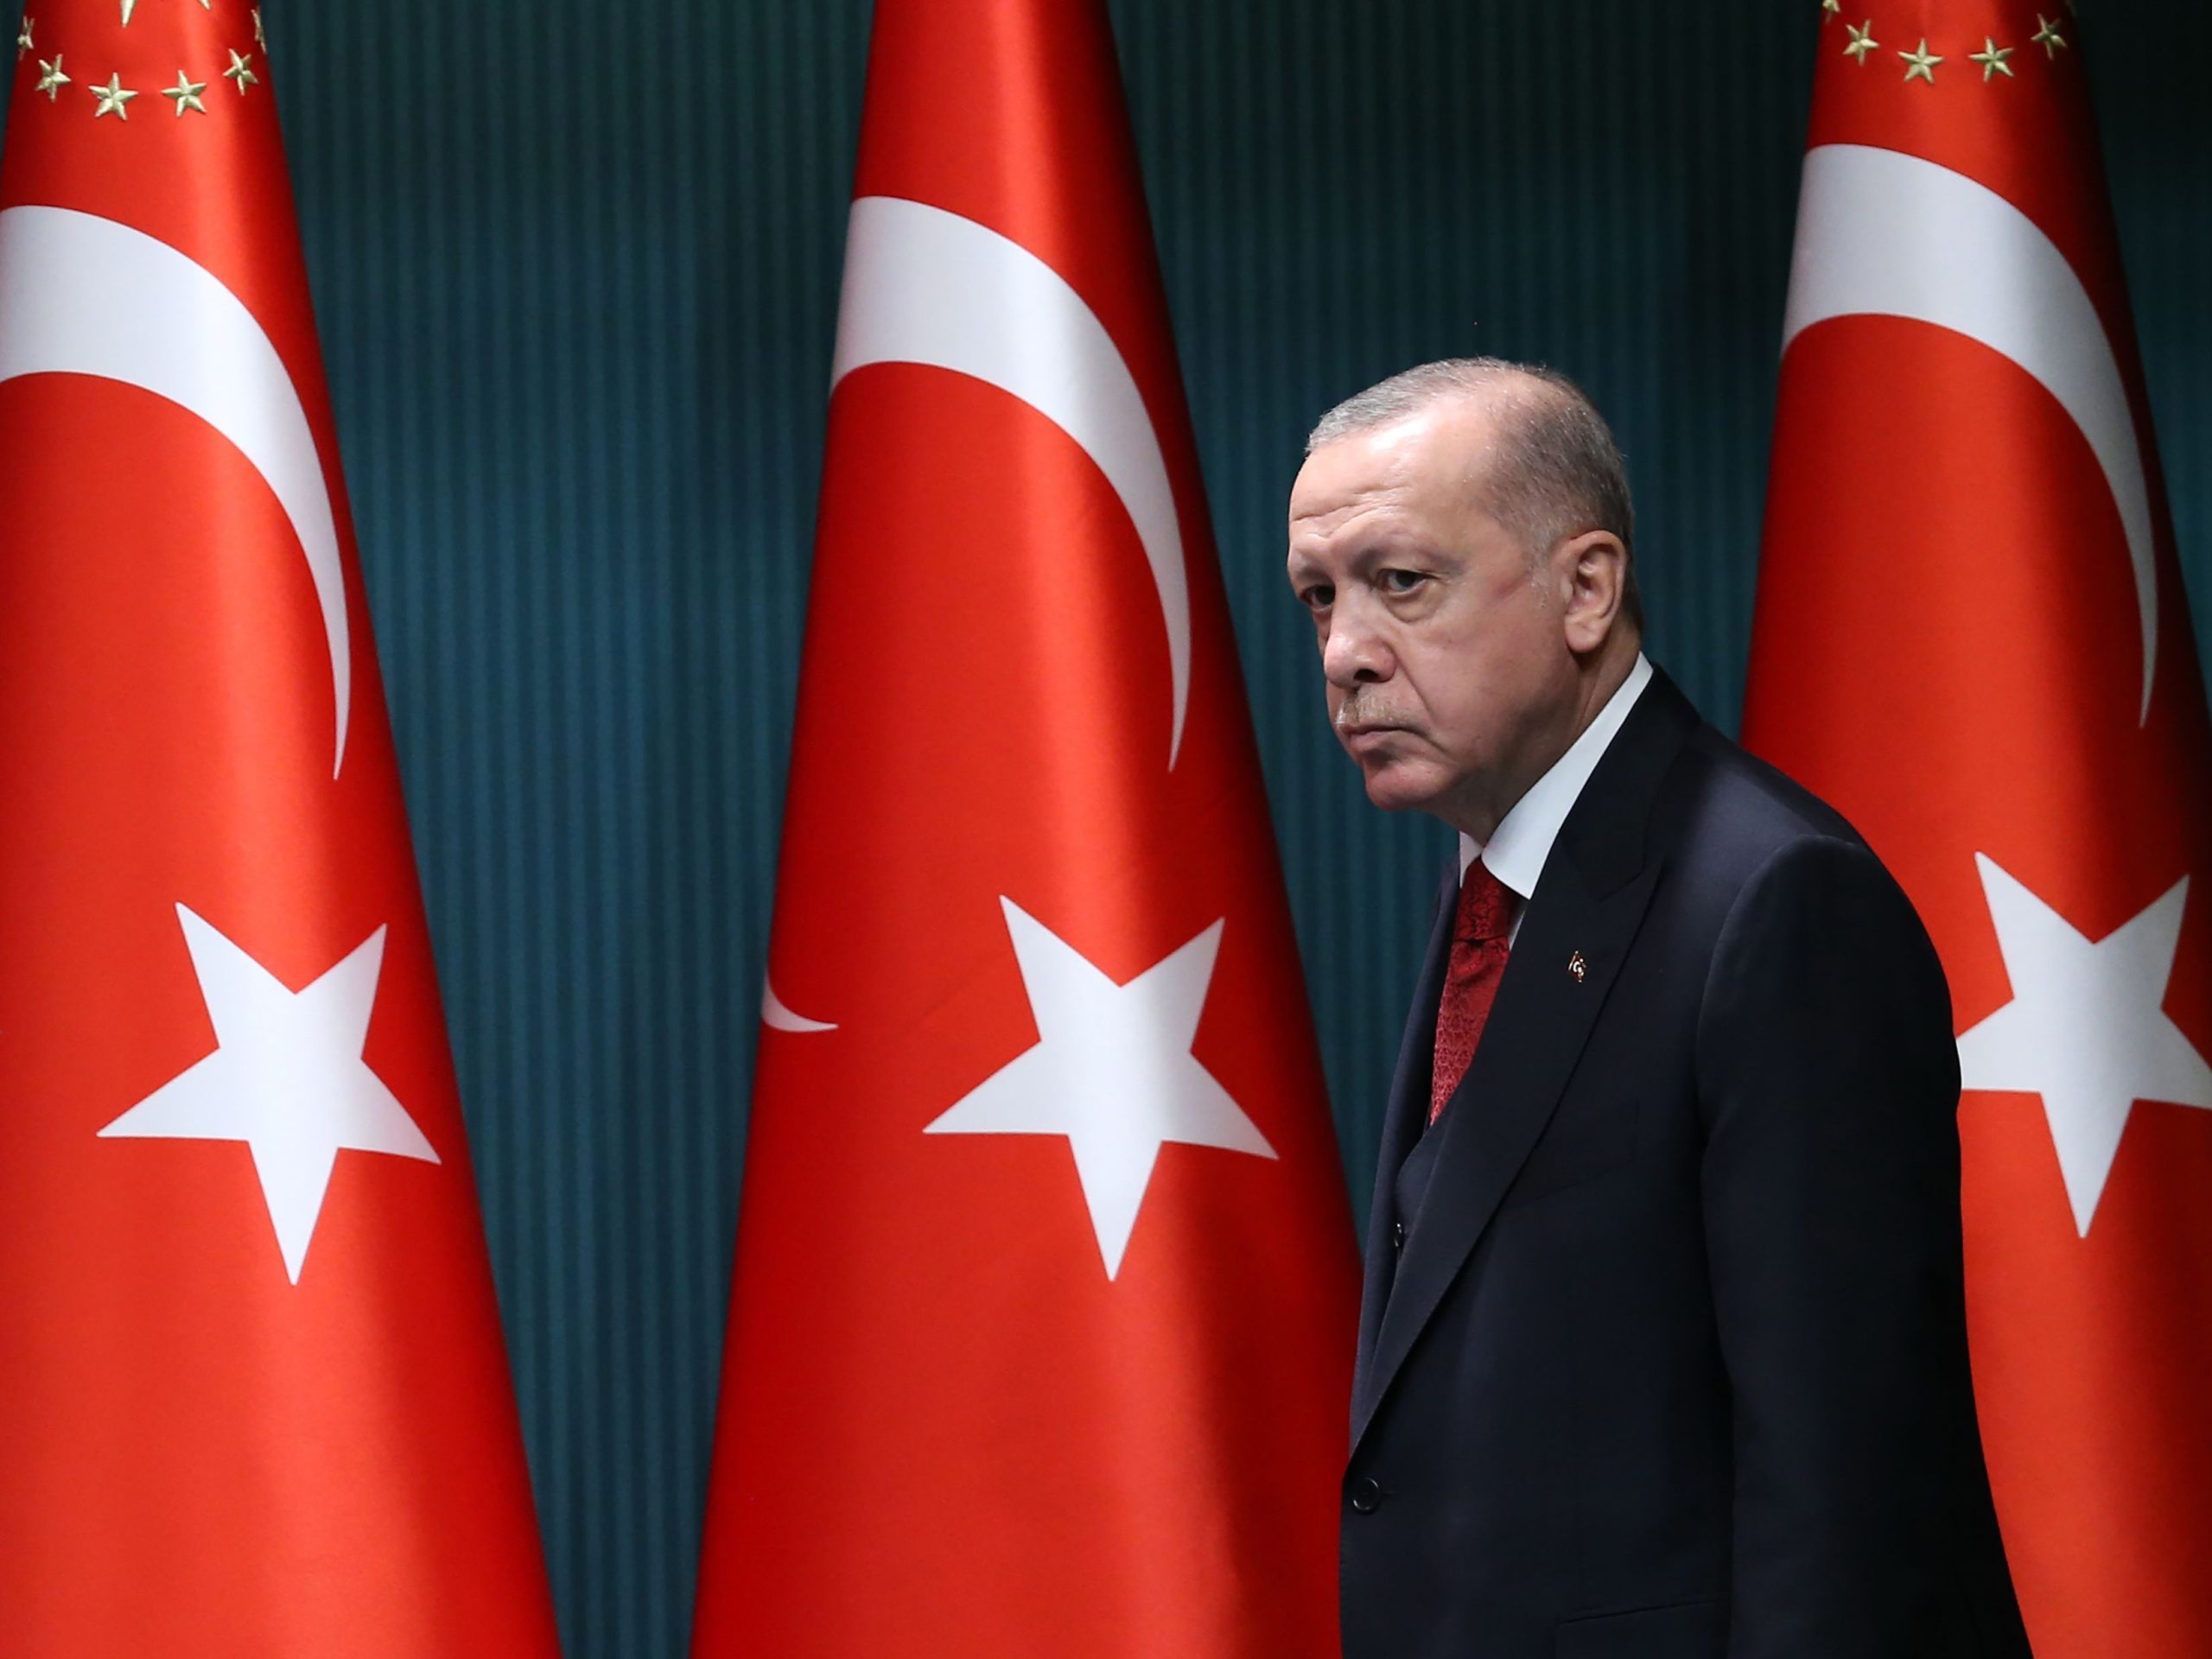 Ανατροπές στην σύνθεση της νέας τουρκικής κυβέρνησης: O Eρντογάν αφήνει εκτός τους Χ.Ακάρ, Μ.Τσαβούσογλου και Σ.Σοϊλού!